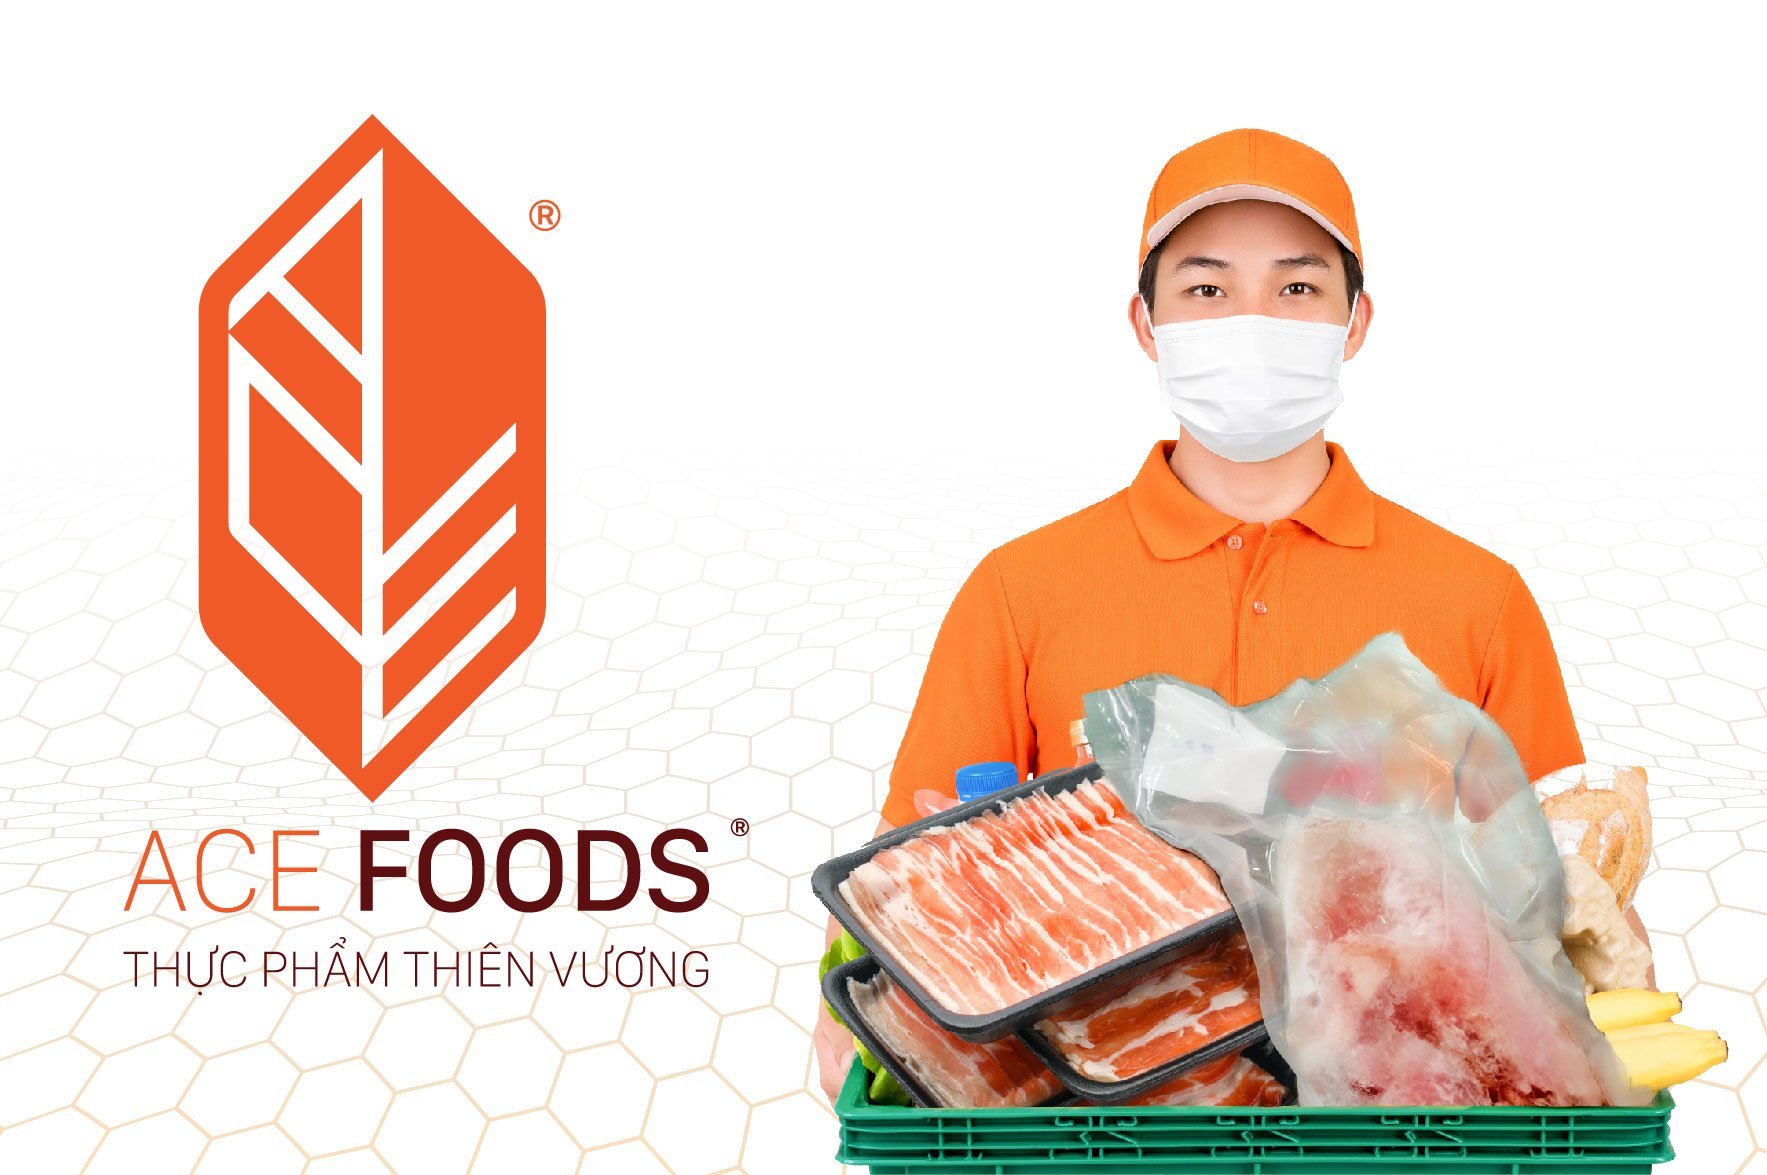 ACE FOODS tự hào là nhà cung cấp thực phẩm uy tín trên thị trường Việt Nam